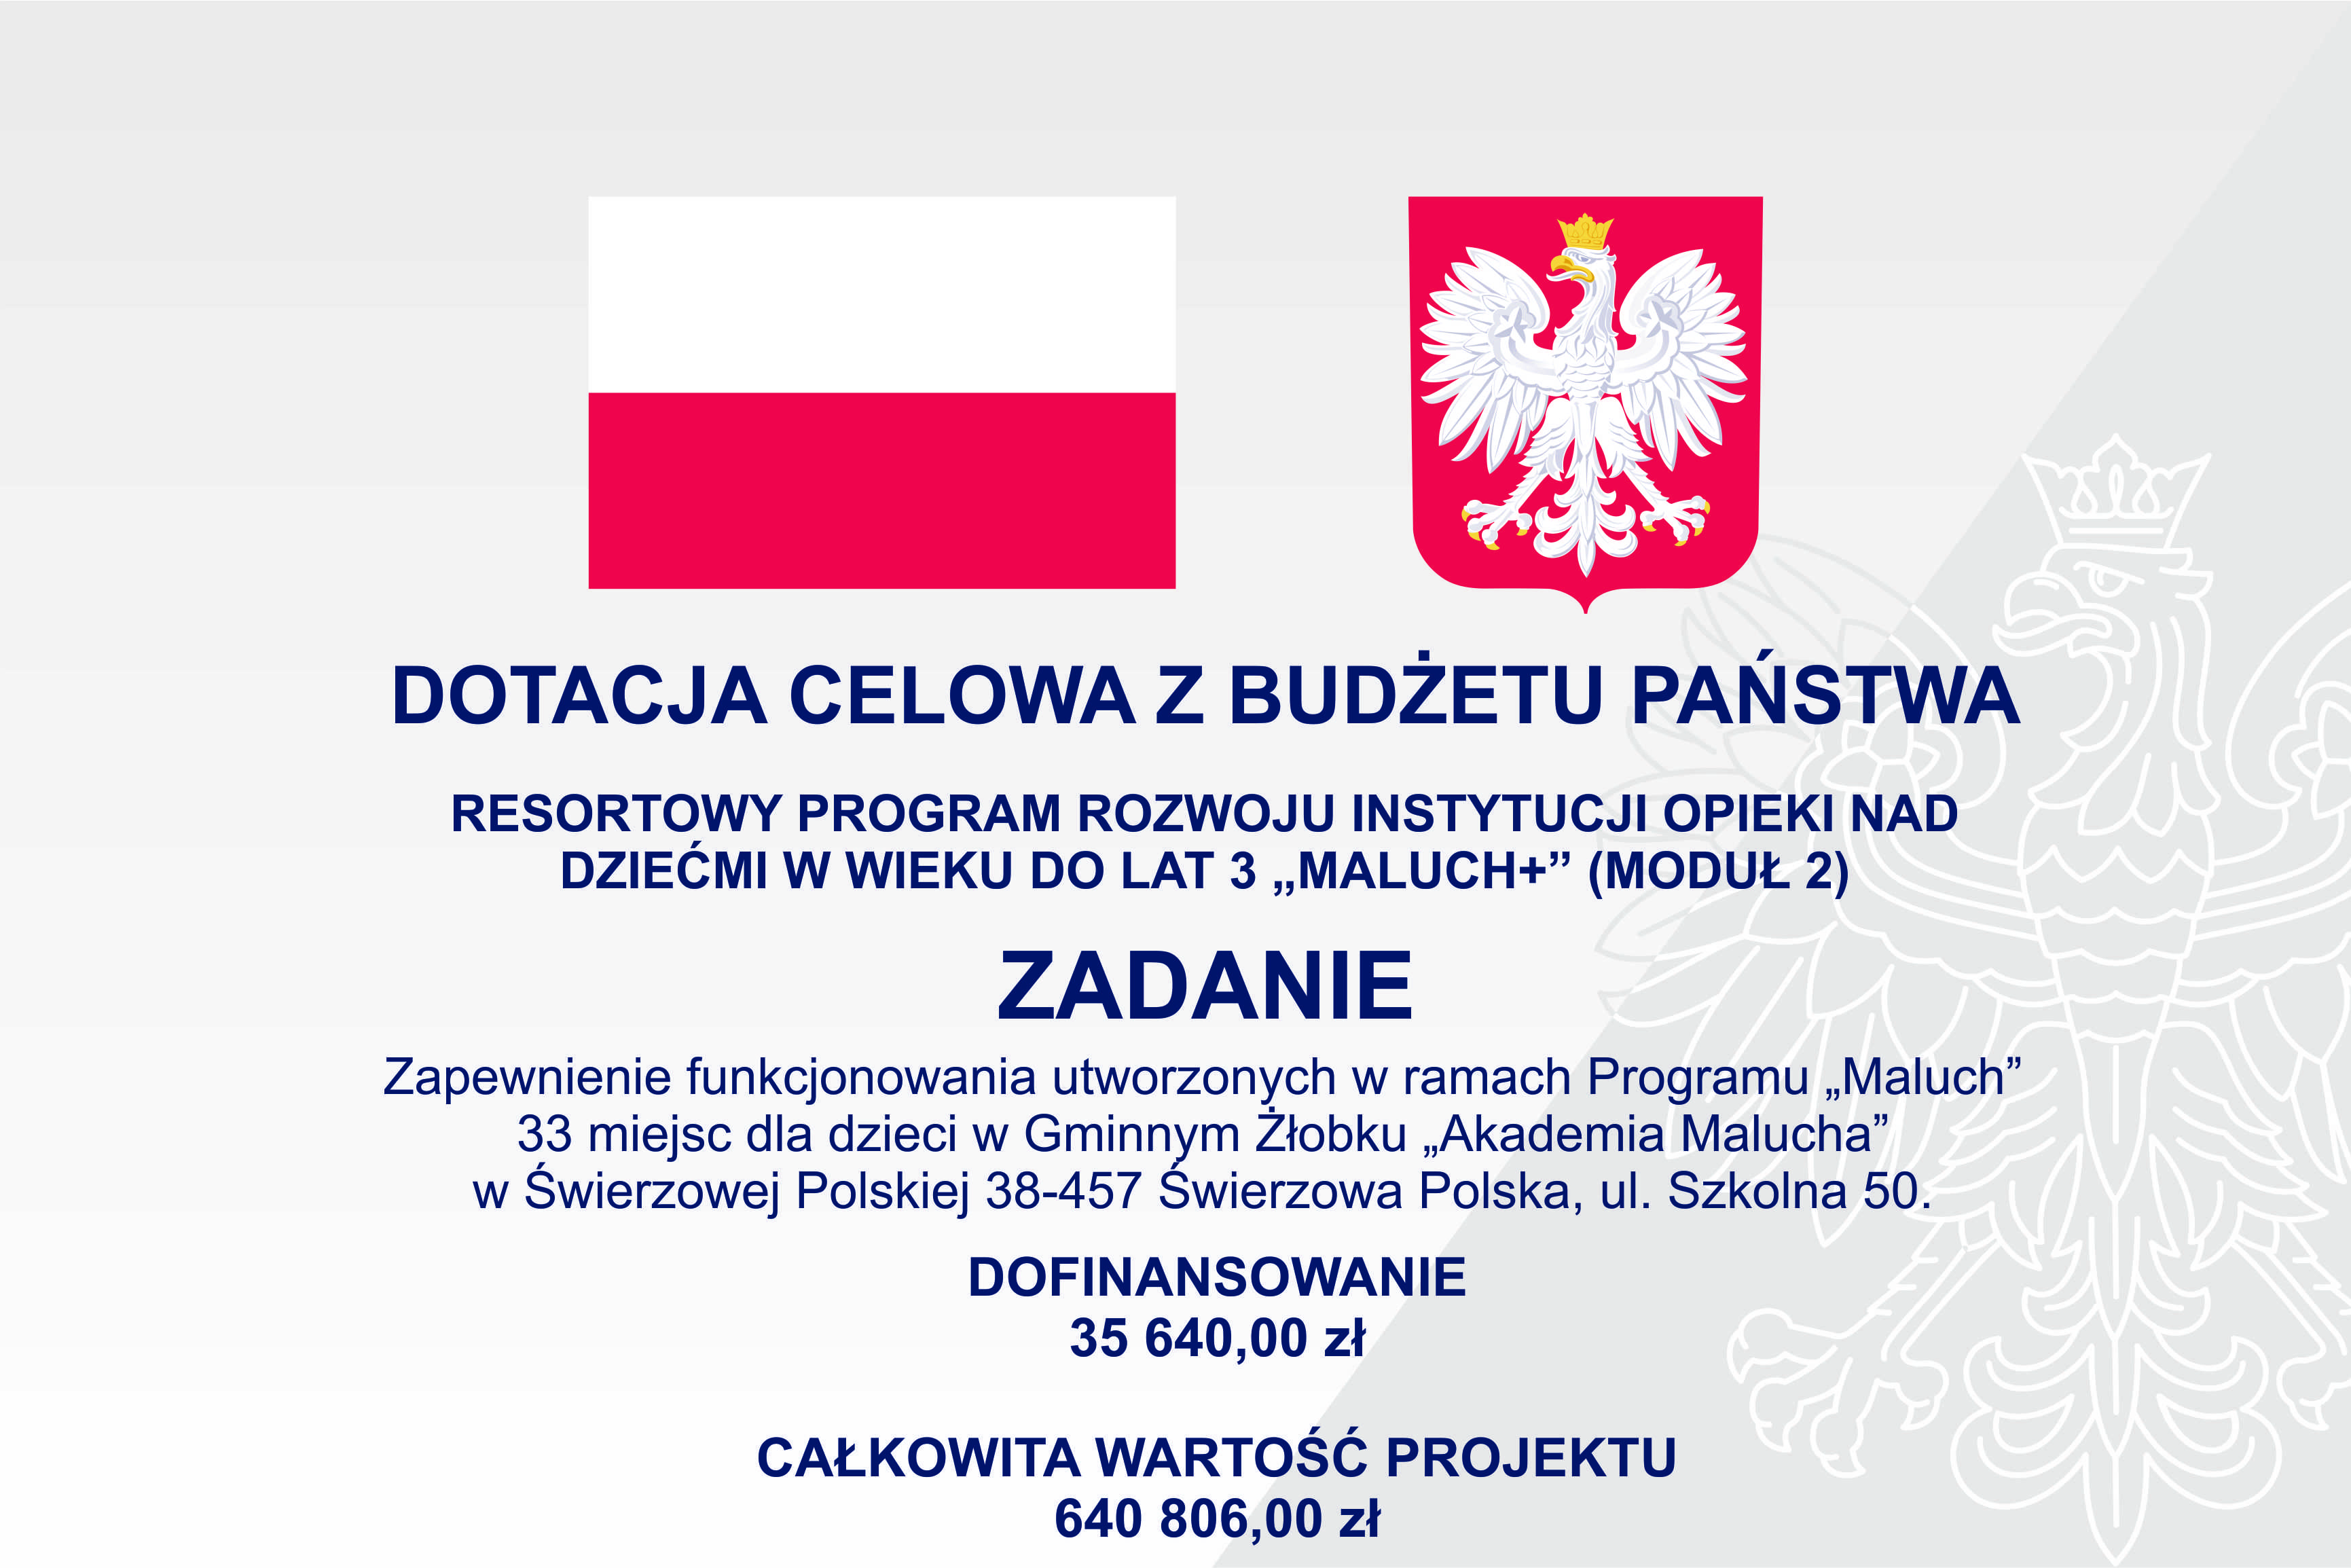 Szare tło z widocznym godłem Polski oraz flaga białoczerwona oraz napisy o dofinansowaniu programu Maluch + 